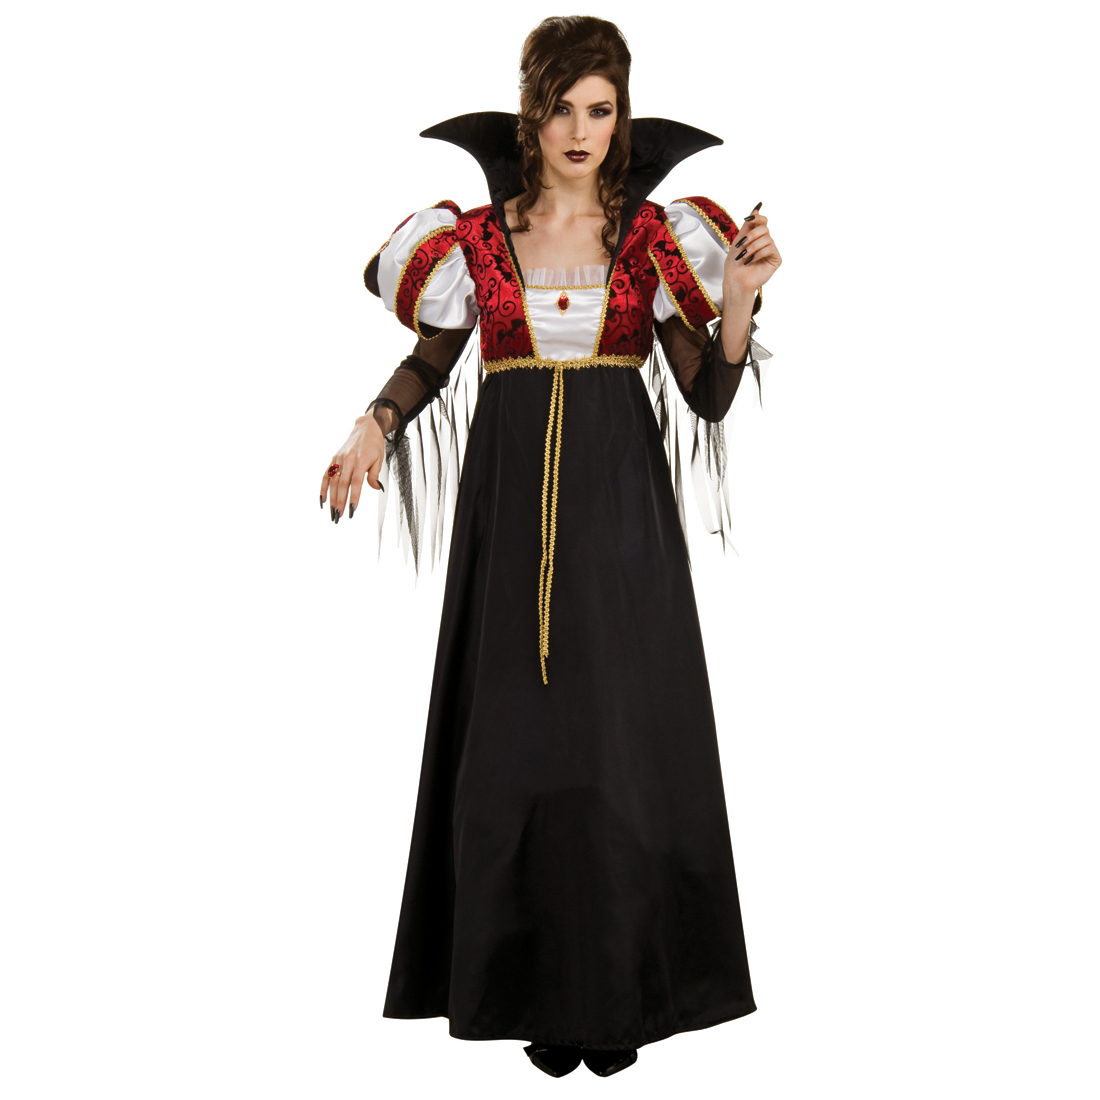 Costume Carnevale Donna Da Vampiressa Regale Halloween Vestito Adulto Vampiro U